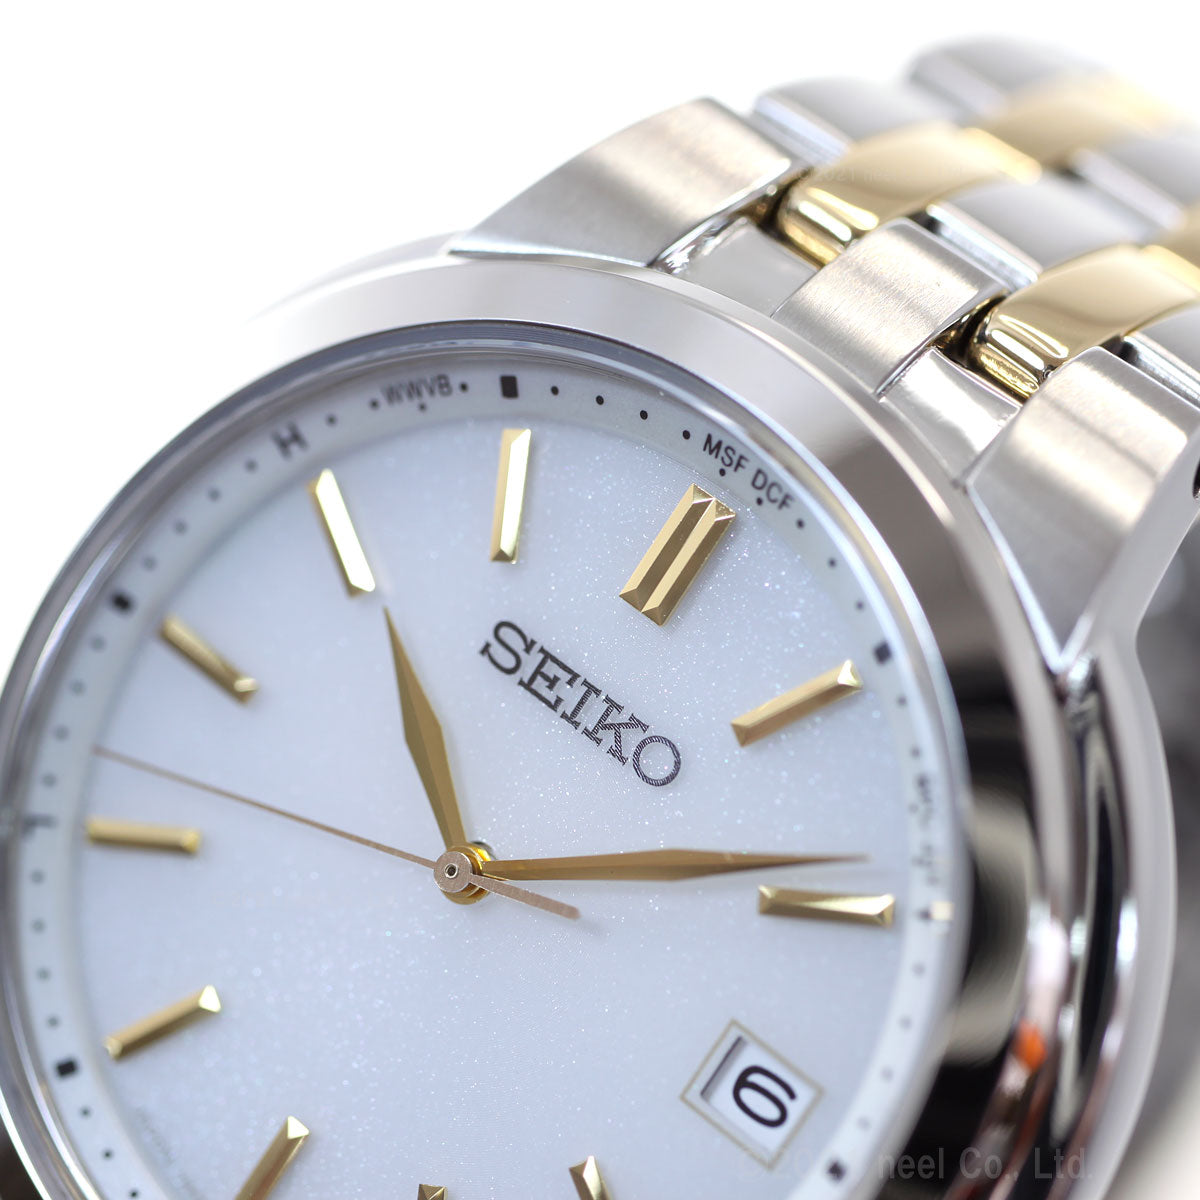 セイコー セレクション SEIKO SELECTION 電波 ソーラー 電波時計 腕時計 ペアモデル メンズ SBTM285